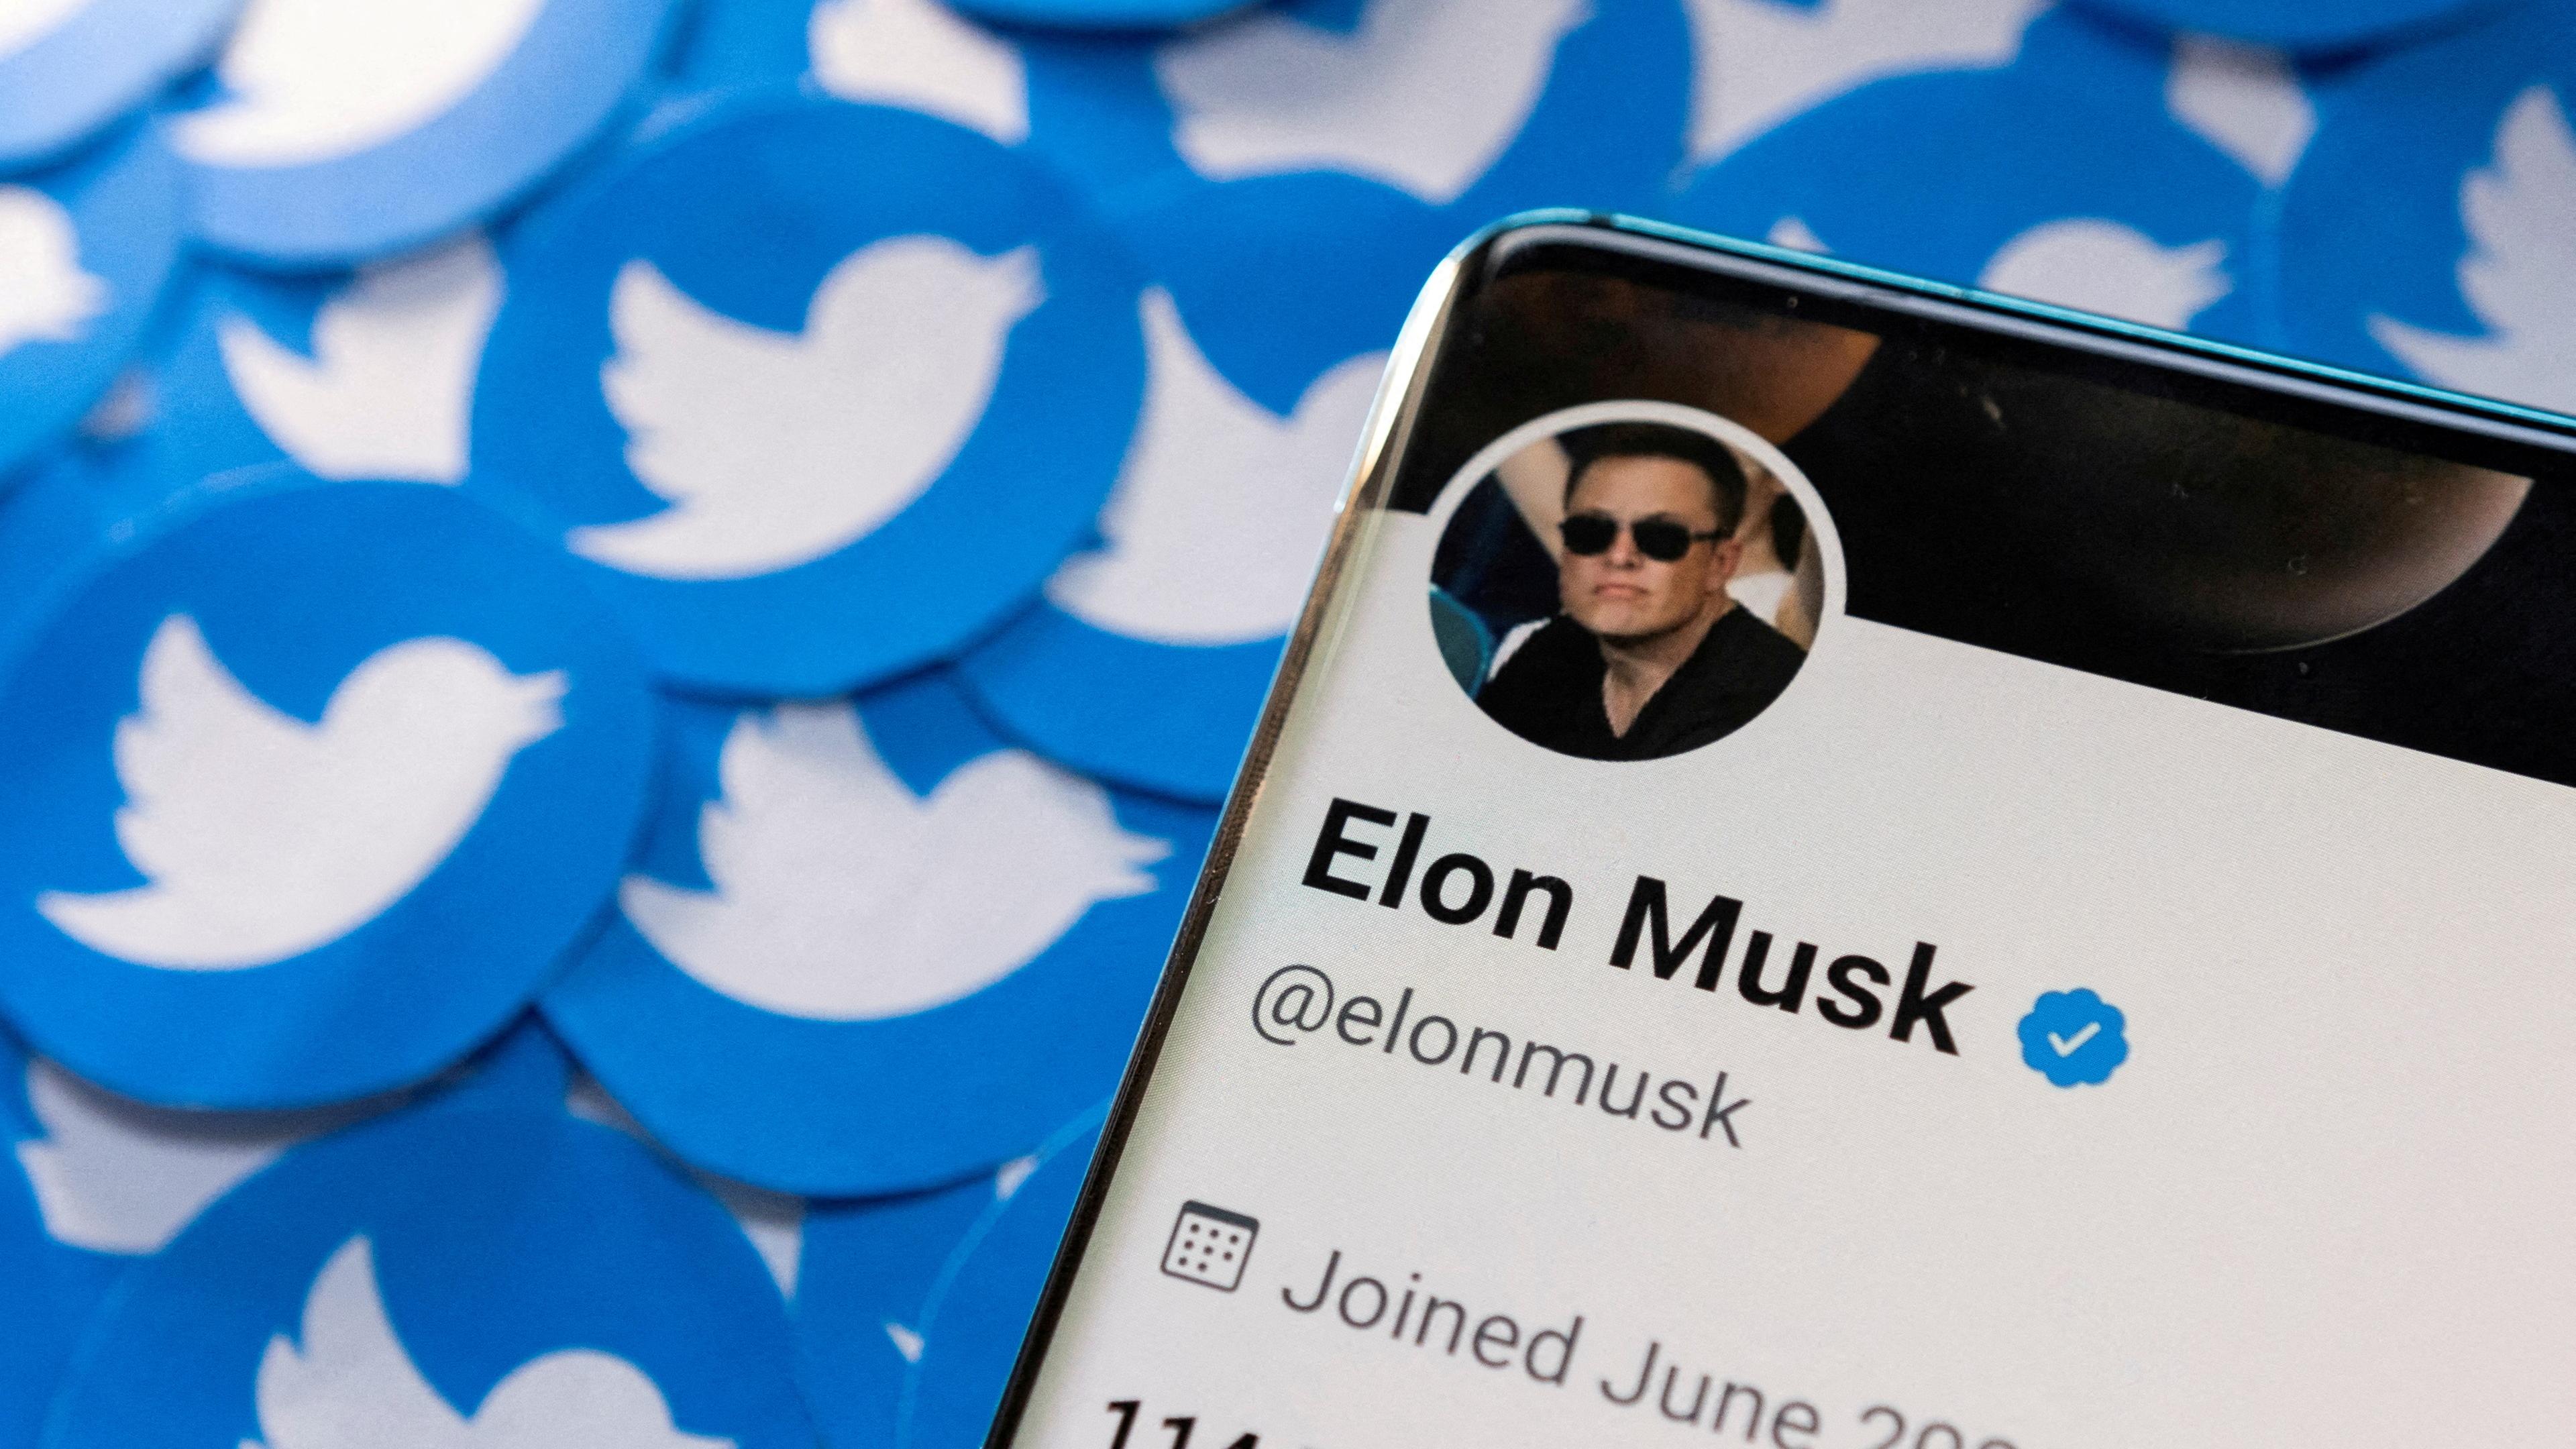 Ein Smartphone mit dem Twitter-Profil von Elon Musk liegt auf gedruckten Twitter-Logos